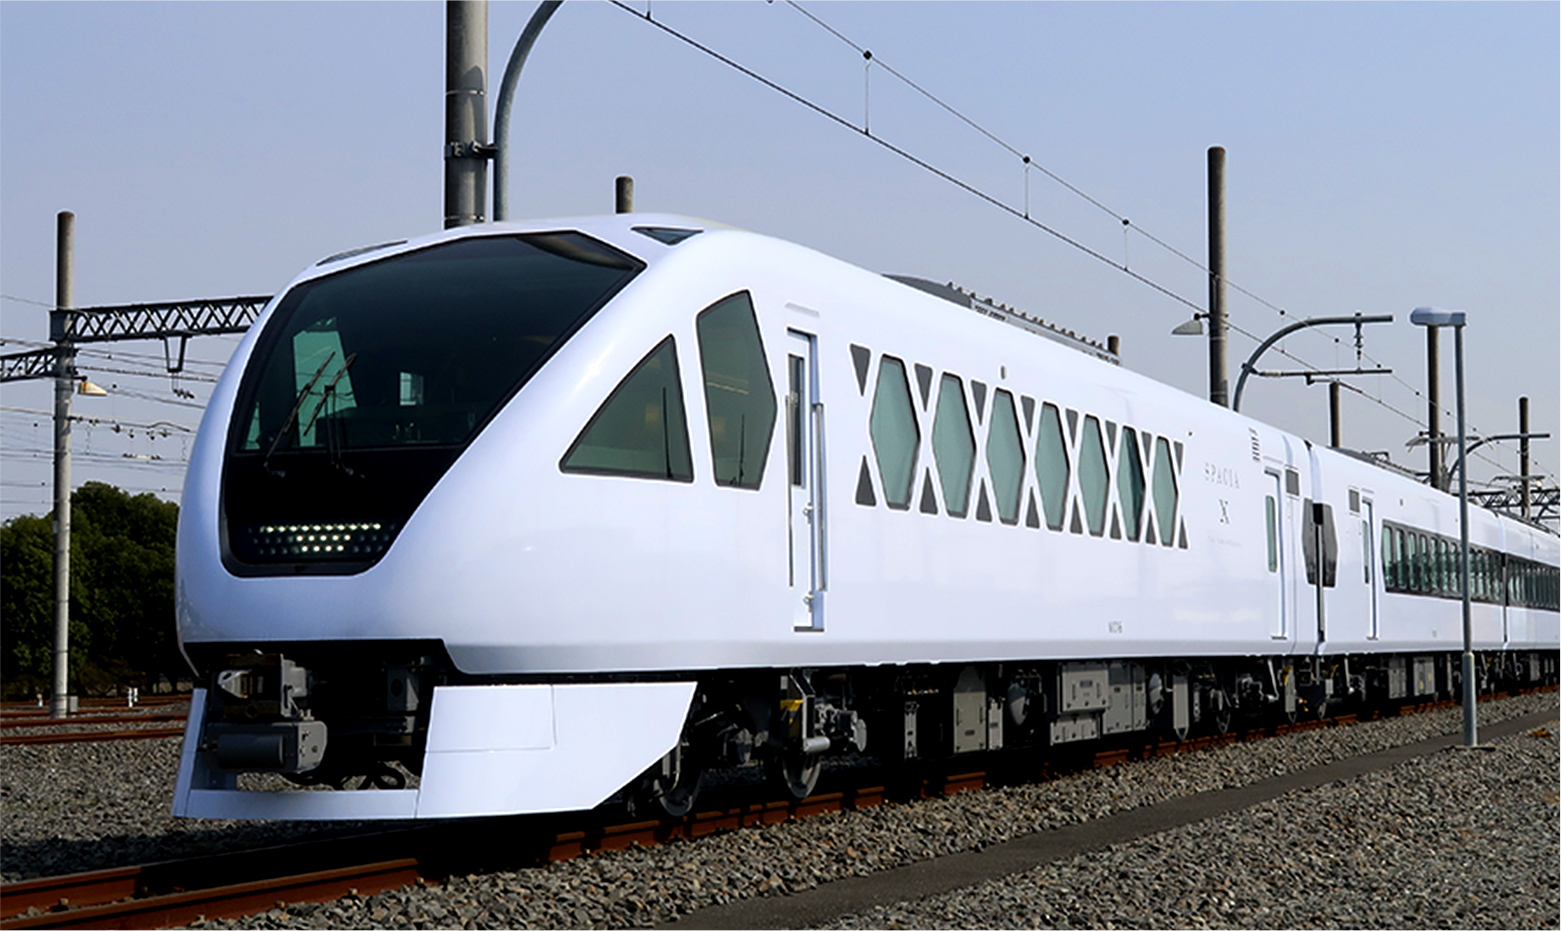 แนะนำการโดยสาร “สเปเซีย X” รถไฟด่วนพิเศษรูปแบบใหม่